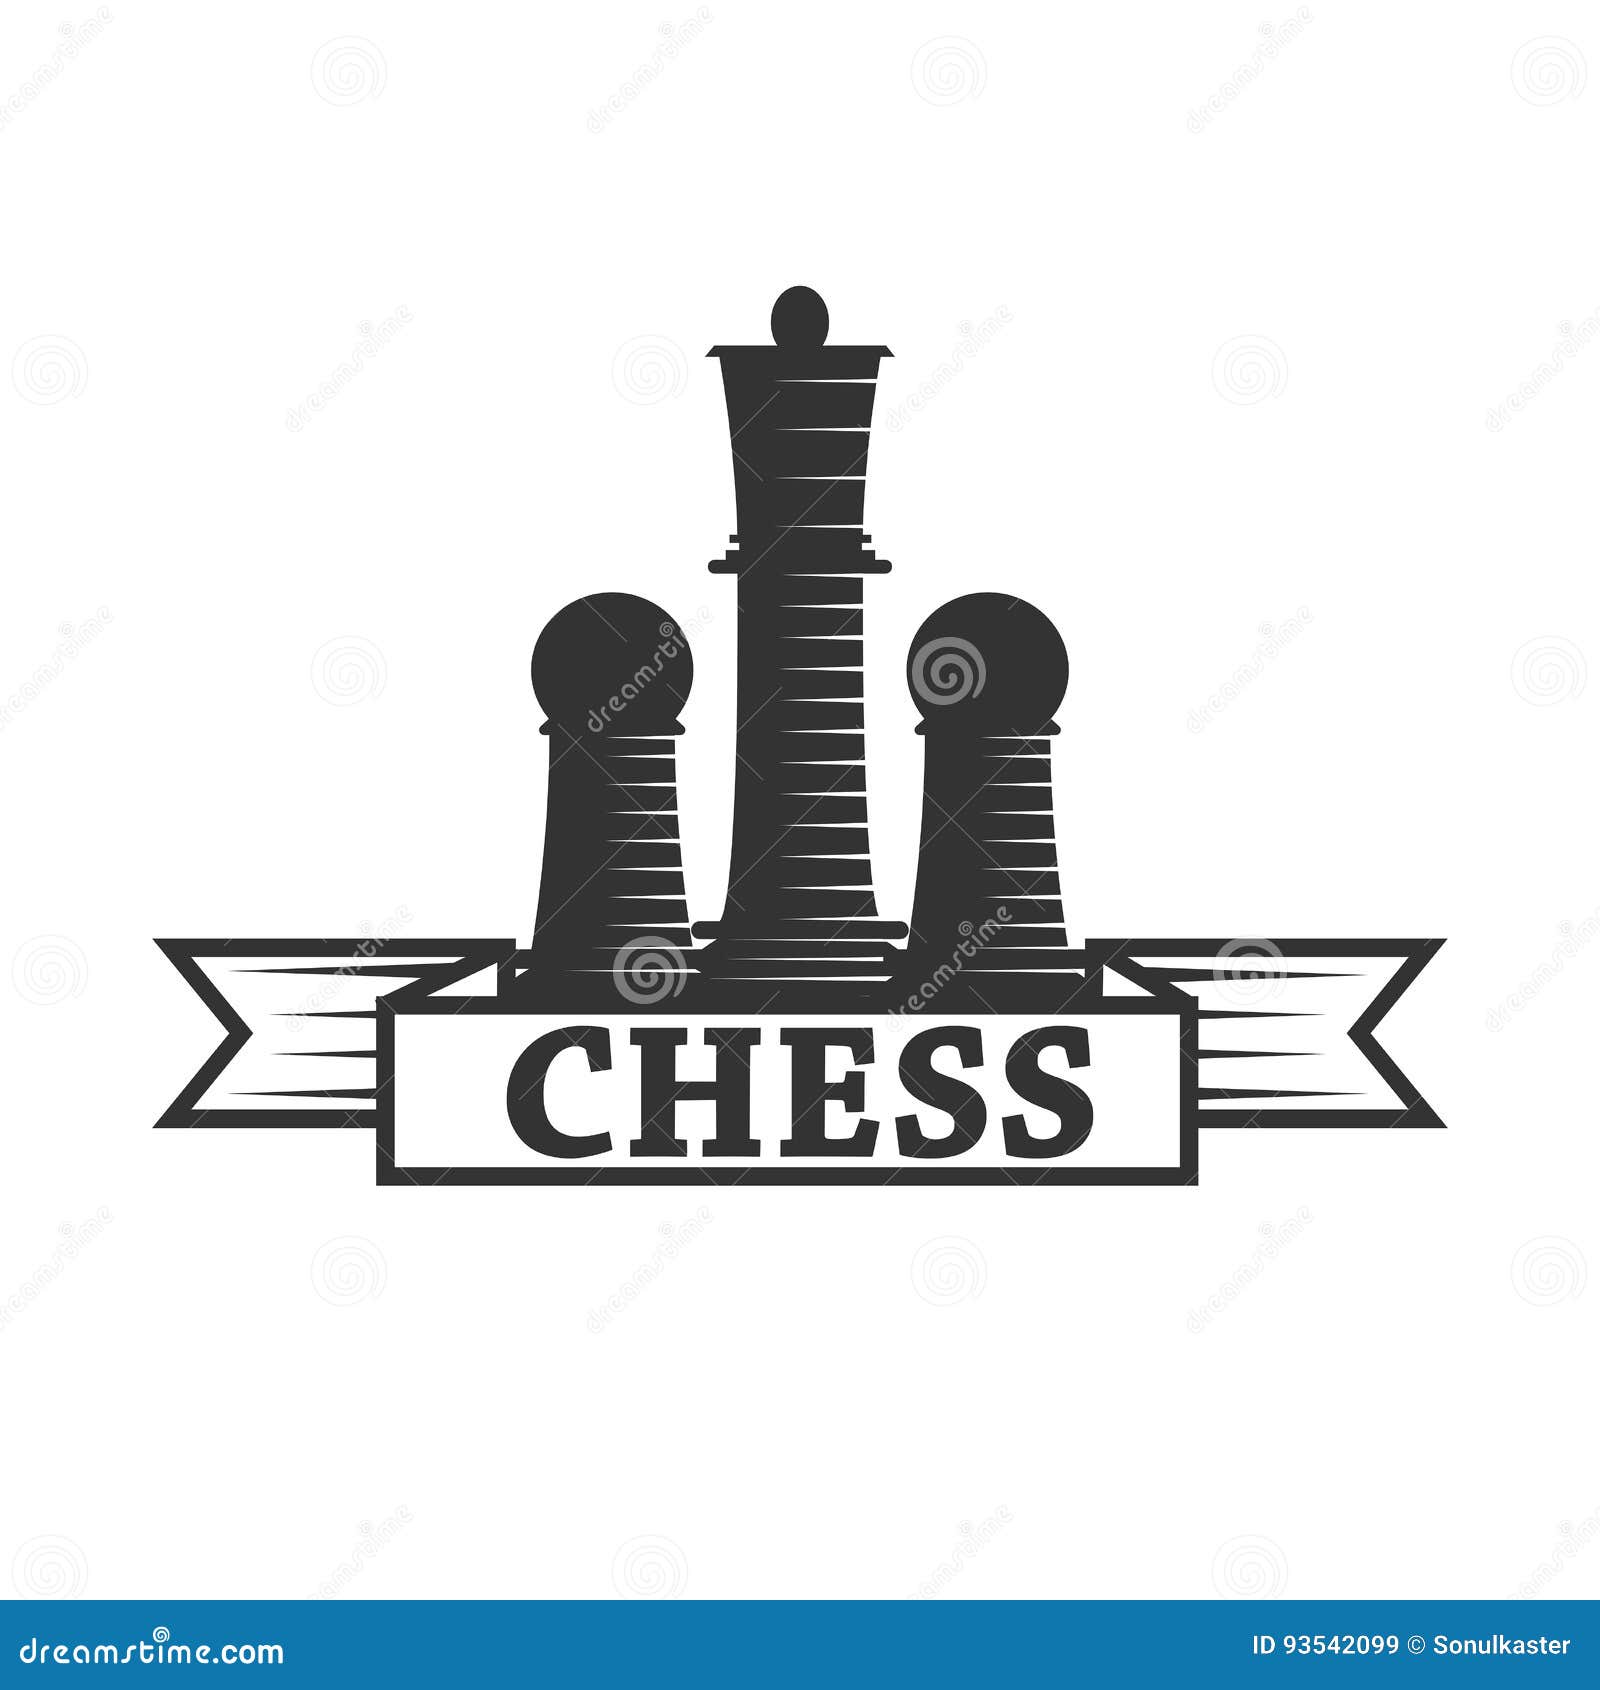 Jogador de xadrez - ícones de pessoas grátis